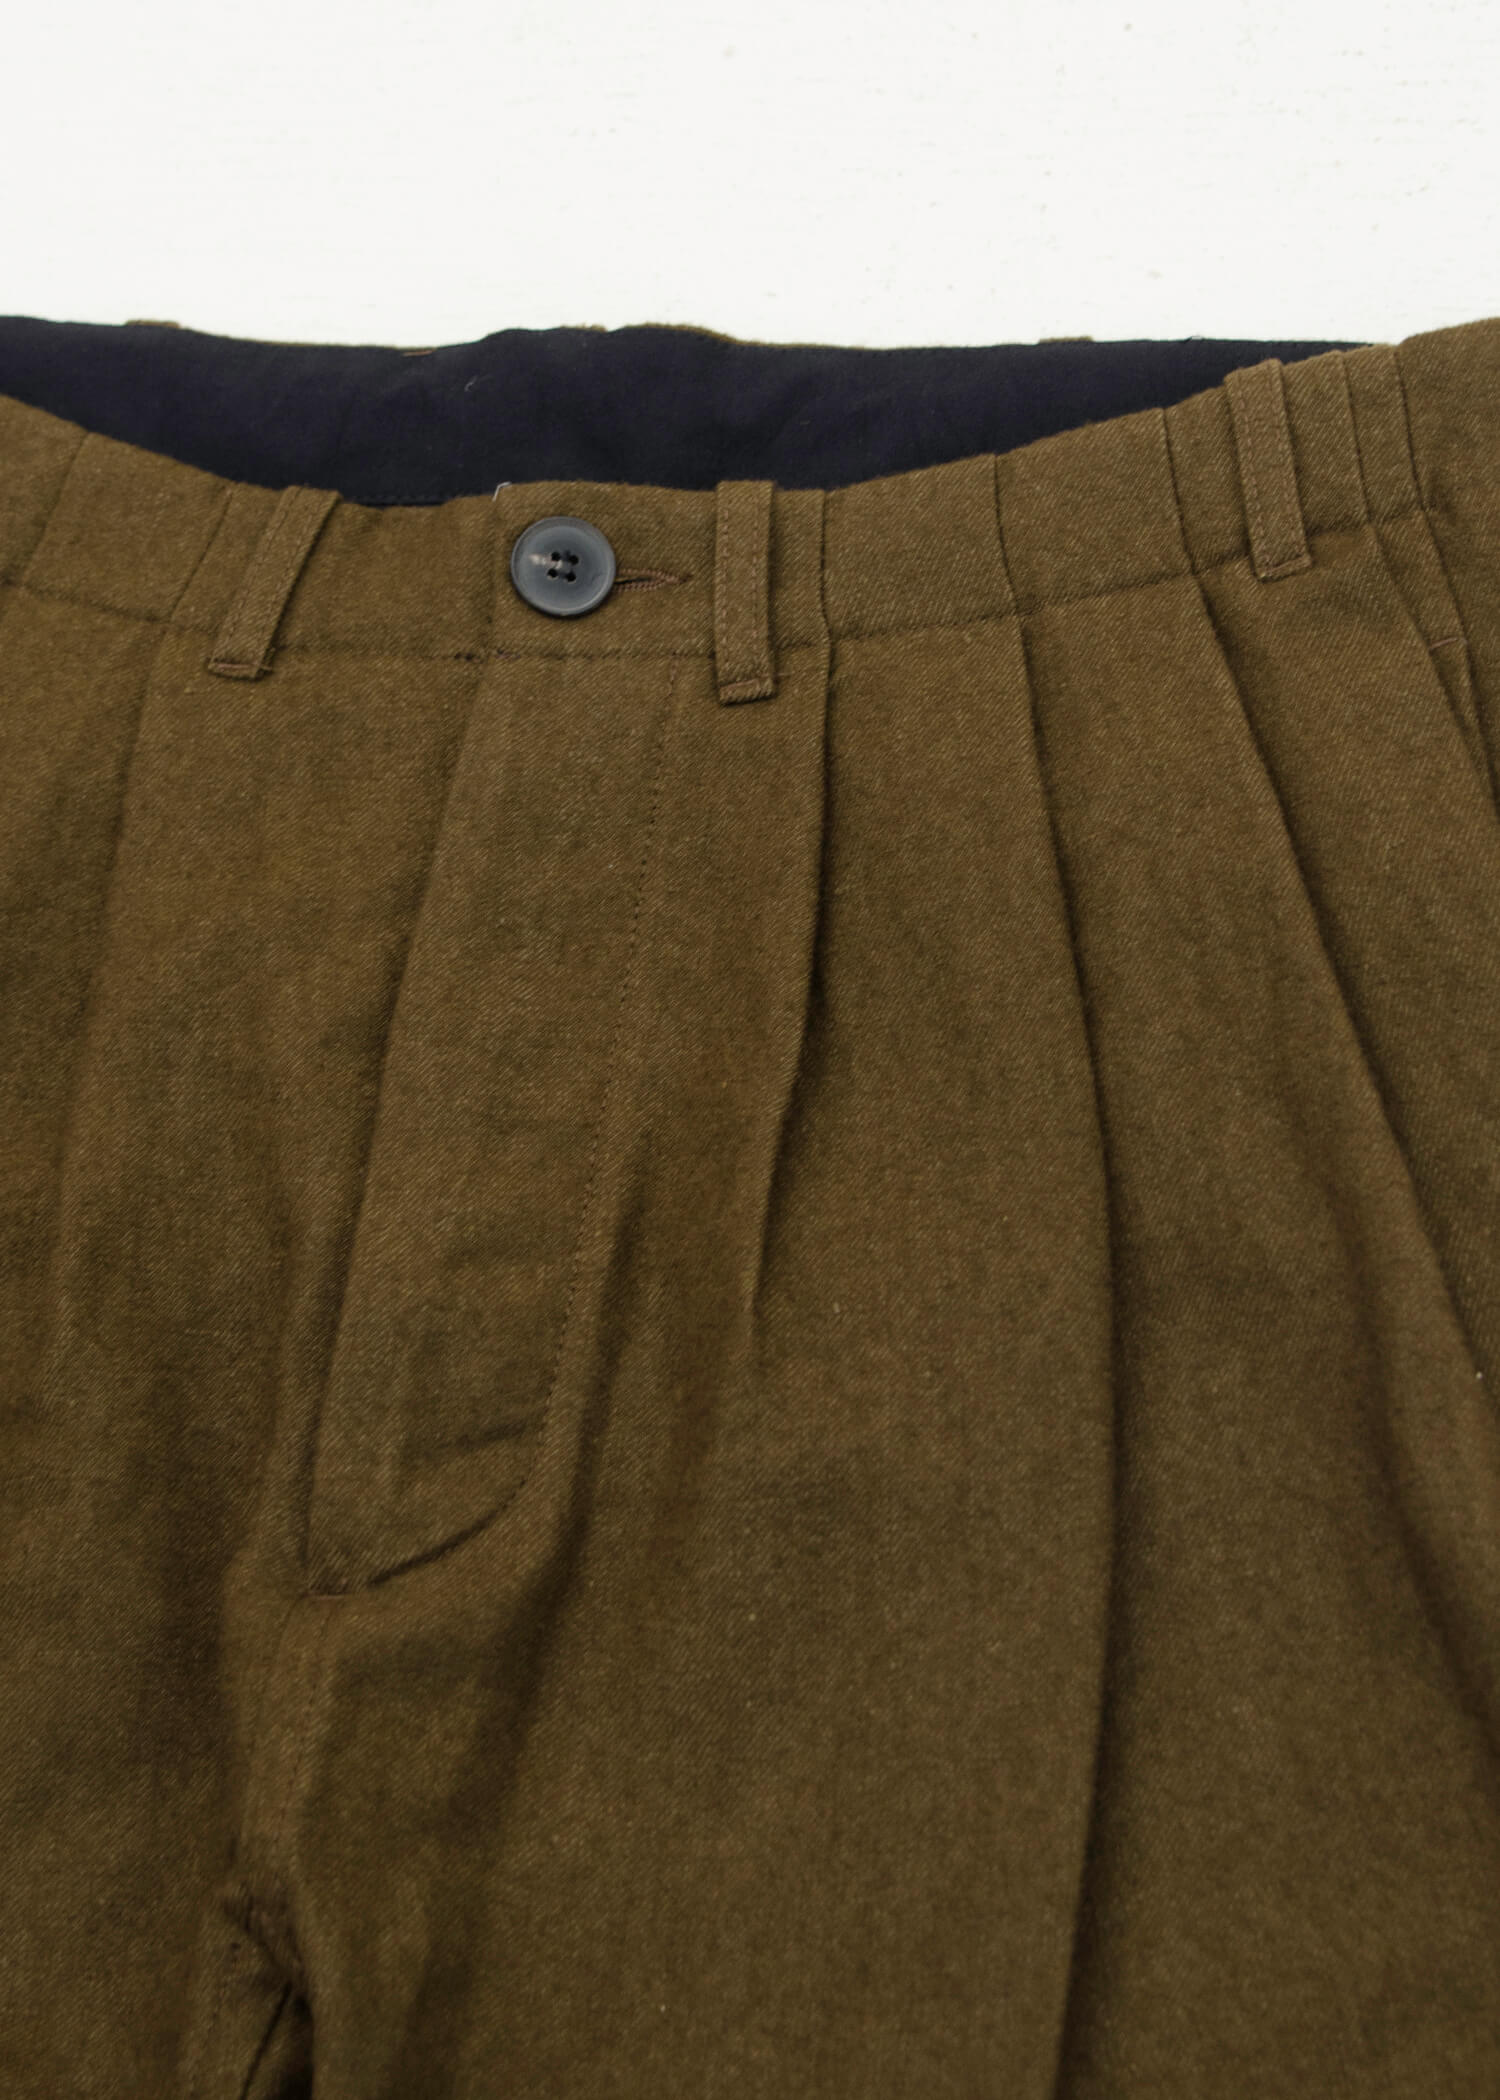 JAN-JAN VAN ESSCHE“裤子#65”橄榄色复古亚麻/羊毛